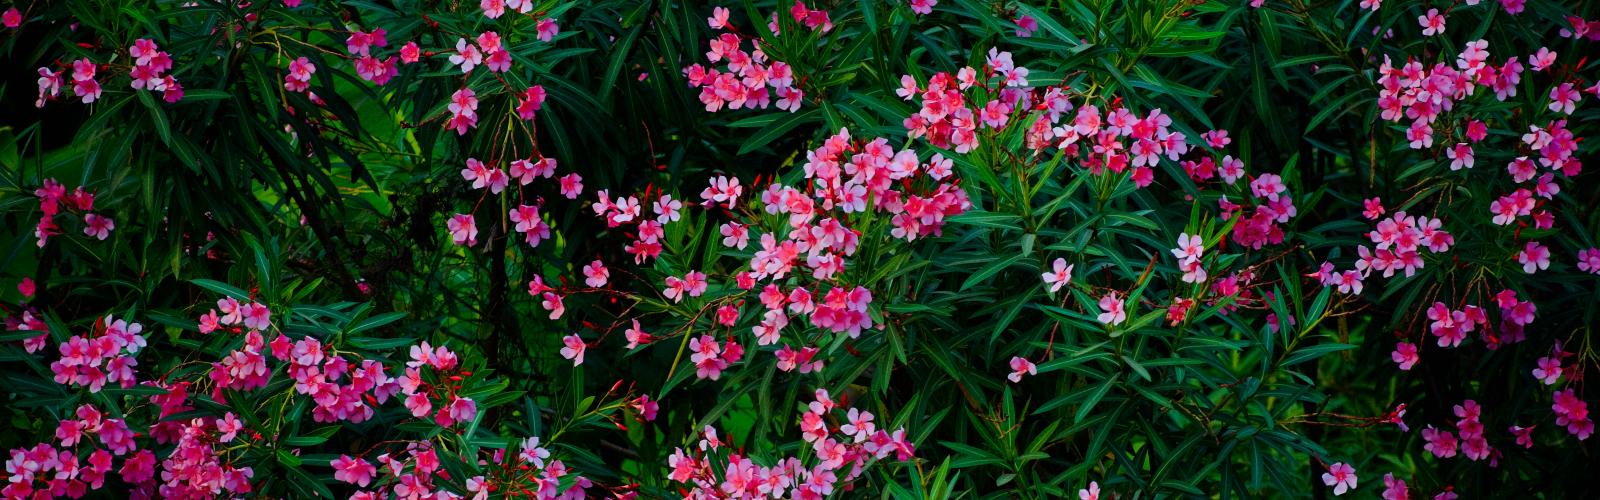 Laurier-rose : Guide complet pour cultiver et admirer sa floraison